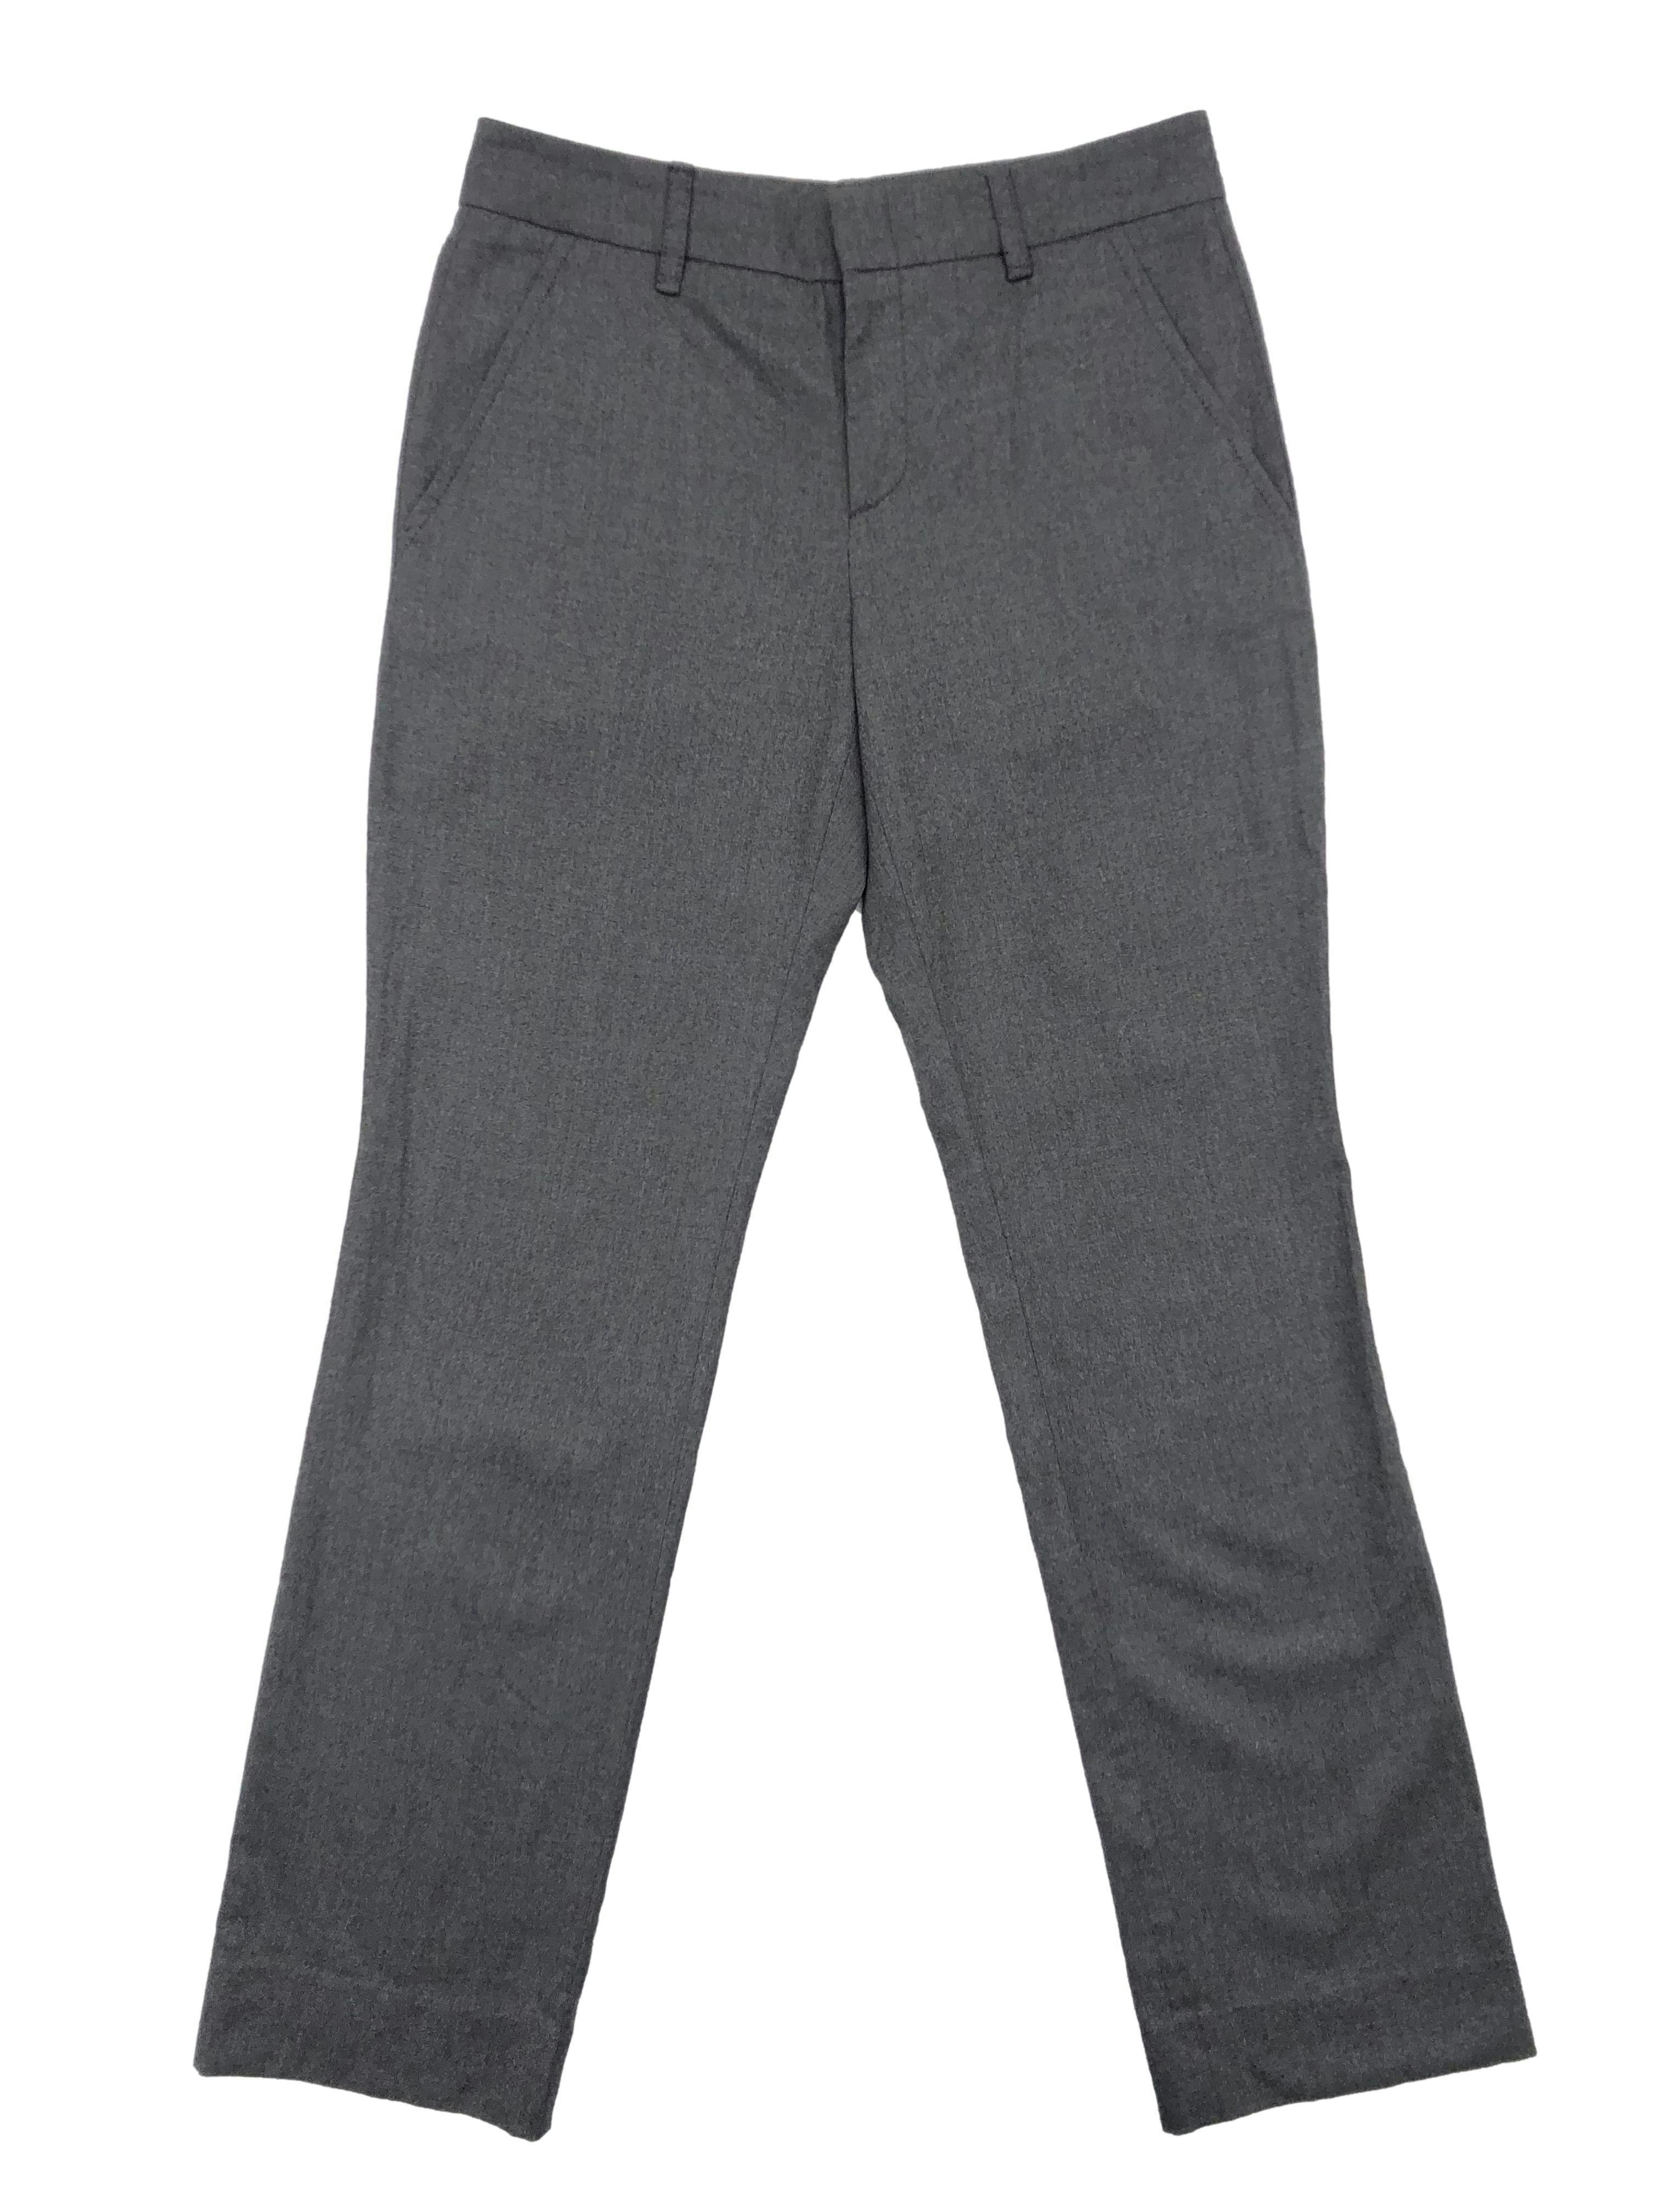 Pantalón formal Gucci 97% lana gris, corte recto, con botón, broche, cierre y bolsillos delanteros. Cintura 74cm Tiro 24cm Largo 96cm